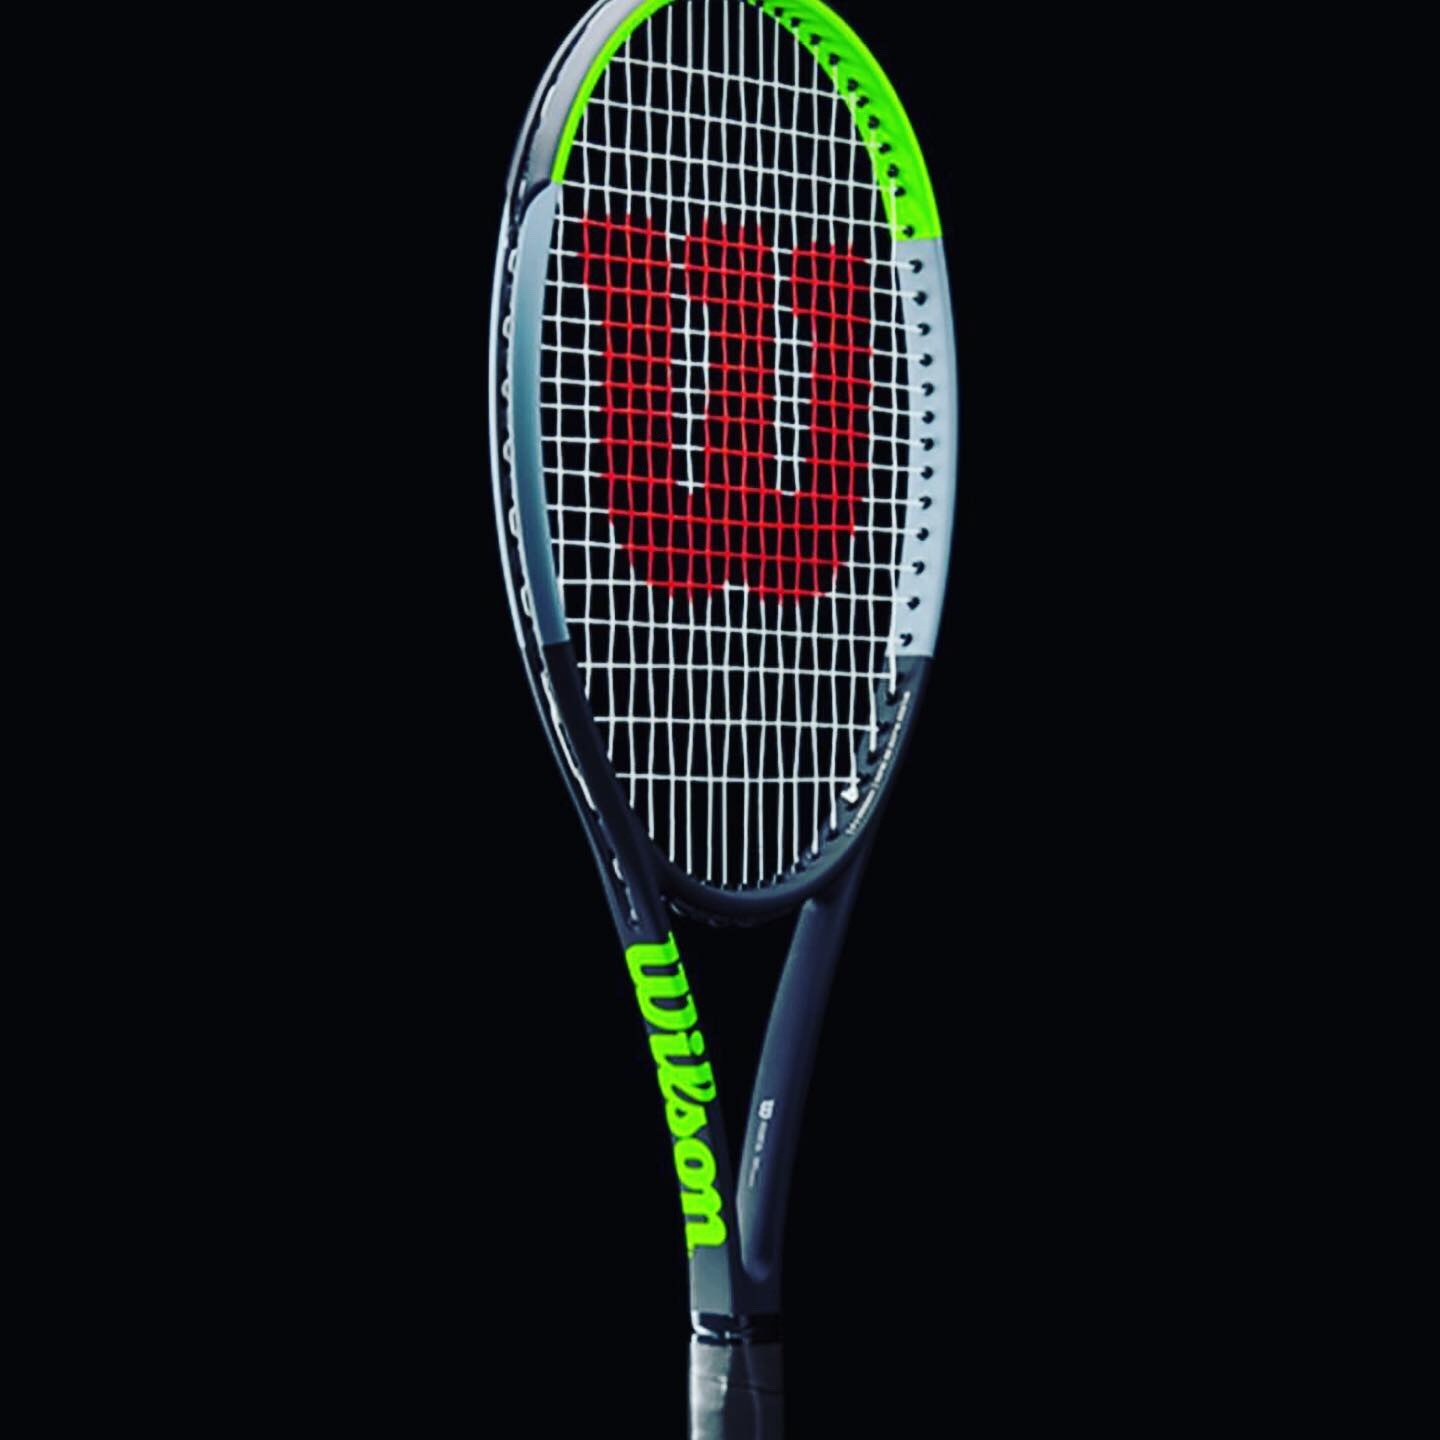 Sjældent hage Nervesammenbrud Wilson Blade V7 Racquet Review - First Impressions - Tennisnerd.net